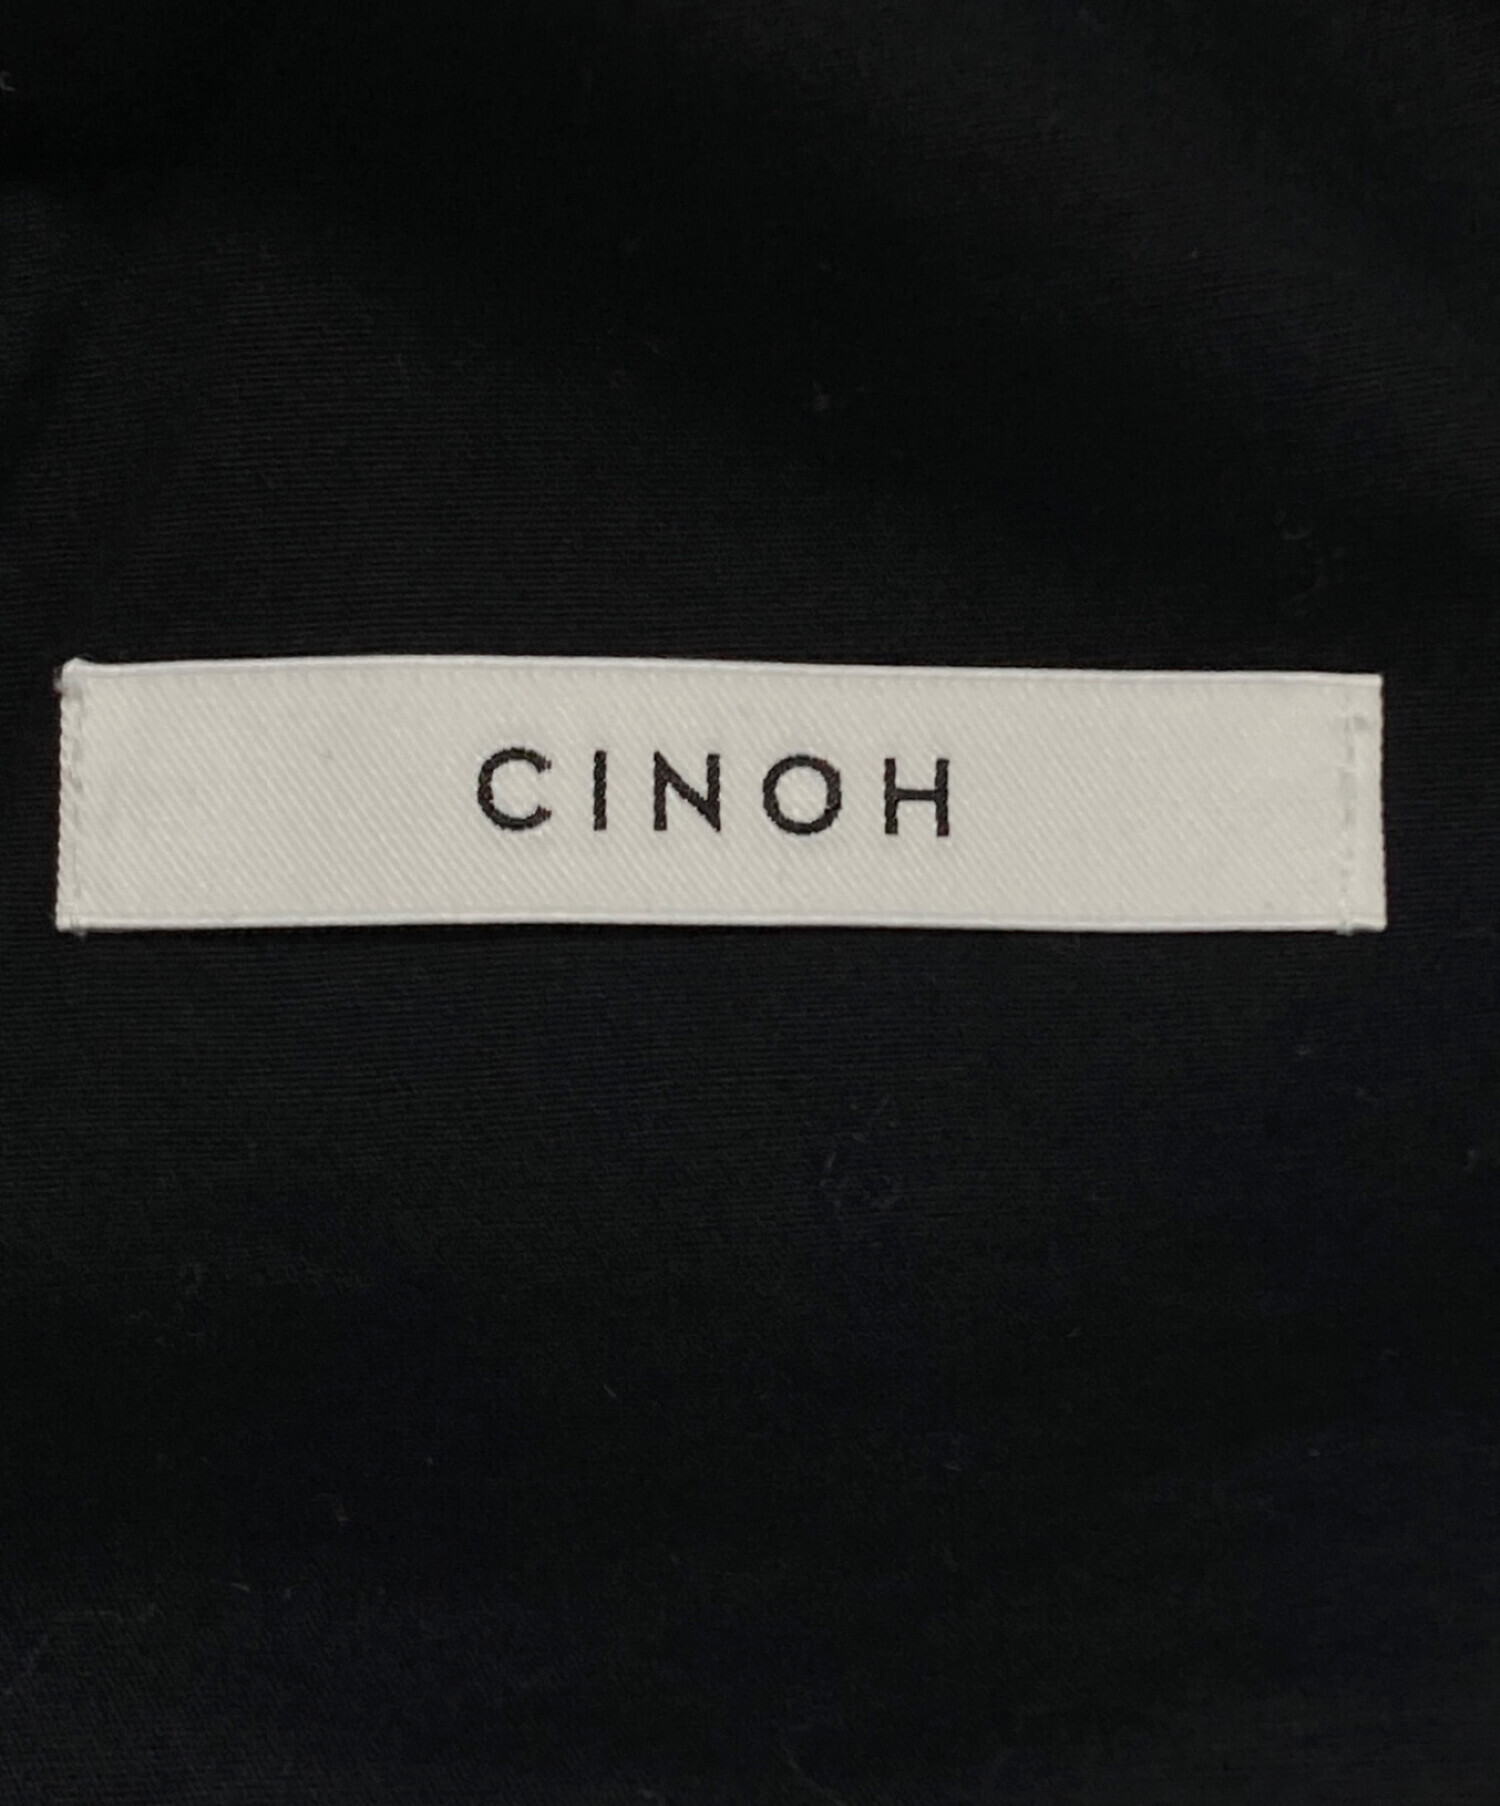 CINOH (チノ) DEUXIEME CLASSE (ドゥーズィエム クラス) SLITパンツ ブラック サイズ:34